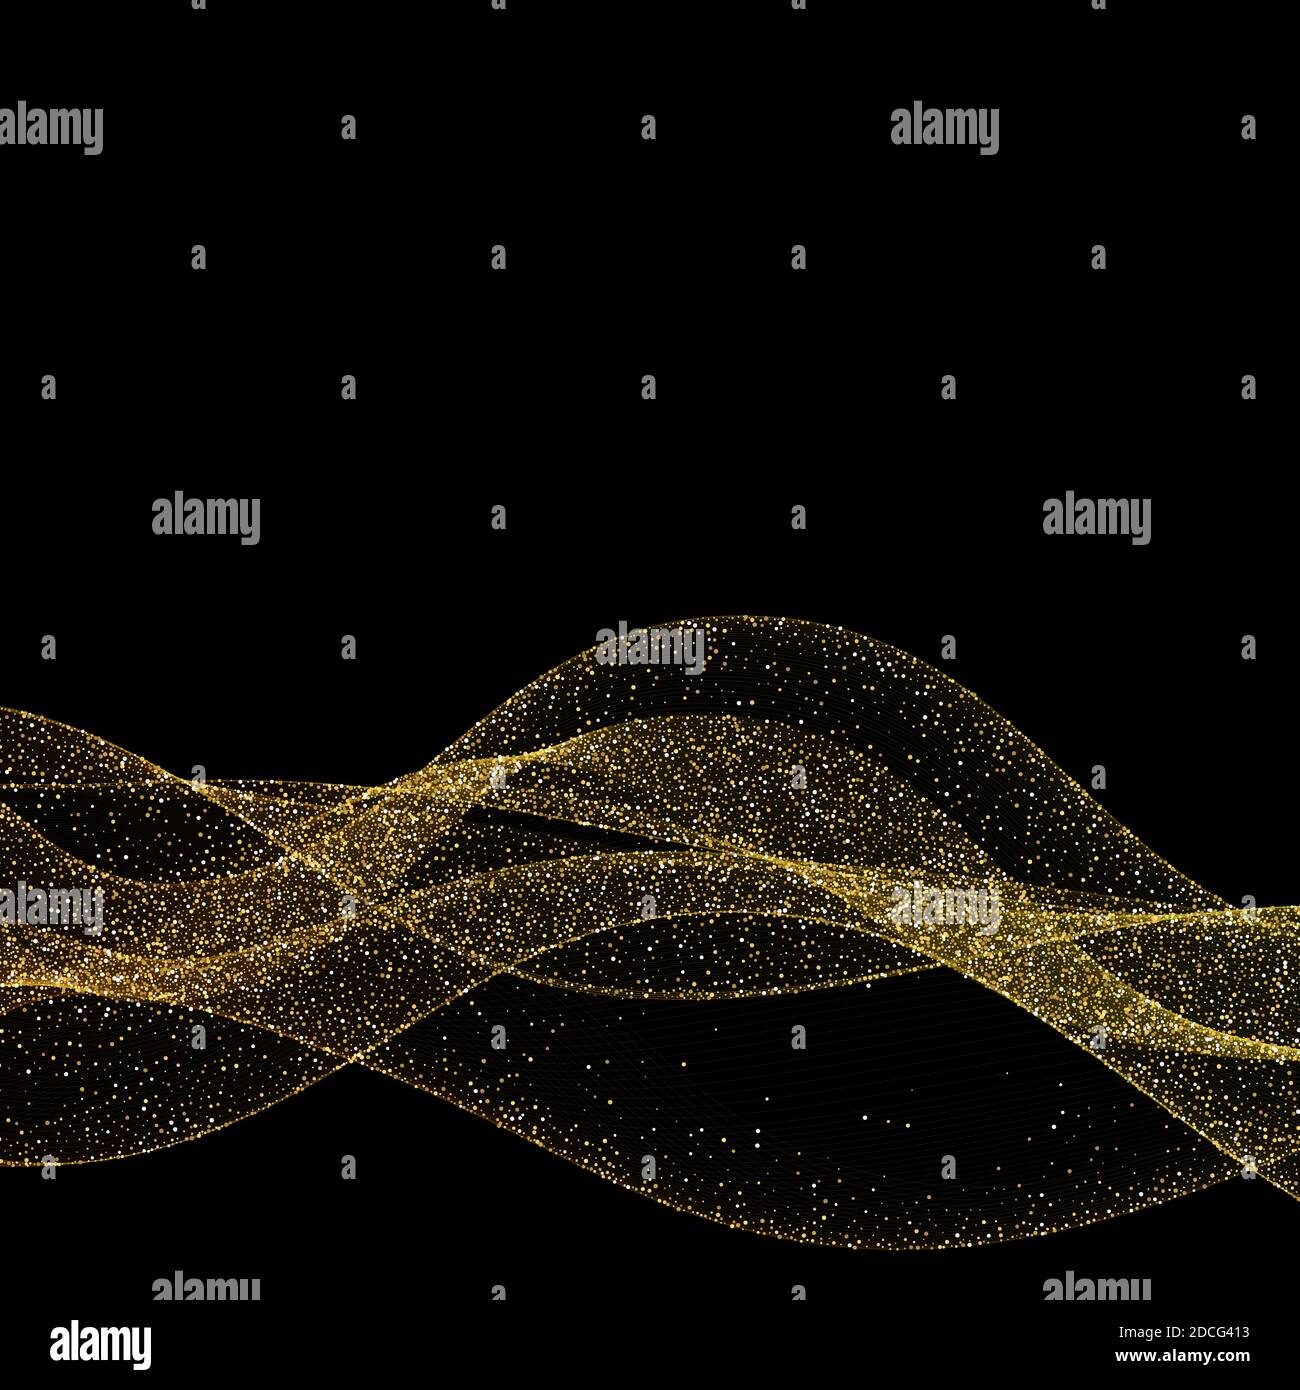 Abstraktes Gold-Waves-Design. Glänzend goldene bewegliche Streifen  Design-Element mit Glitzer-Effekt auf dunklem Hintergrund für Weihnachten  weihnachtskarte. Abbildung Stockfotografie - Alamy